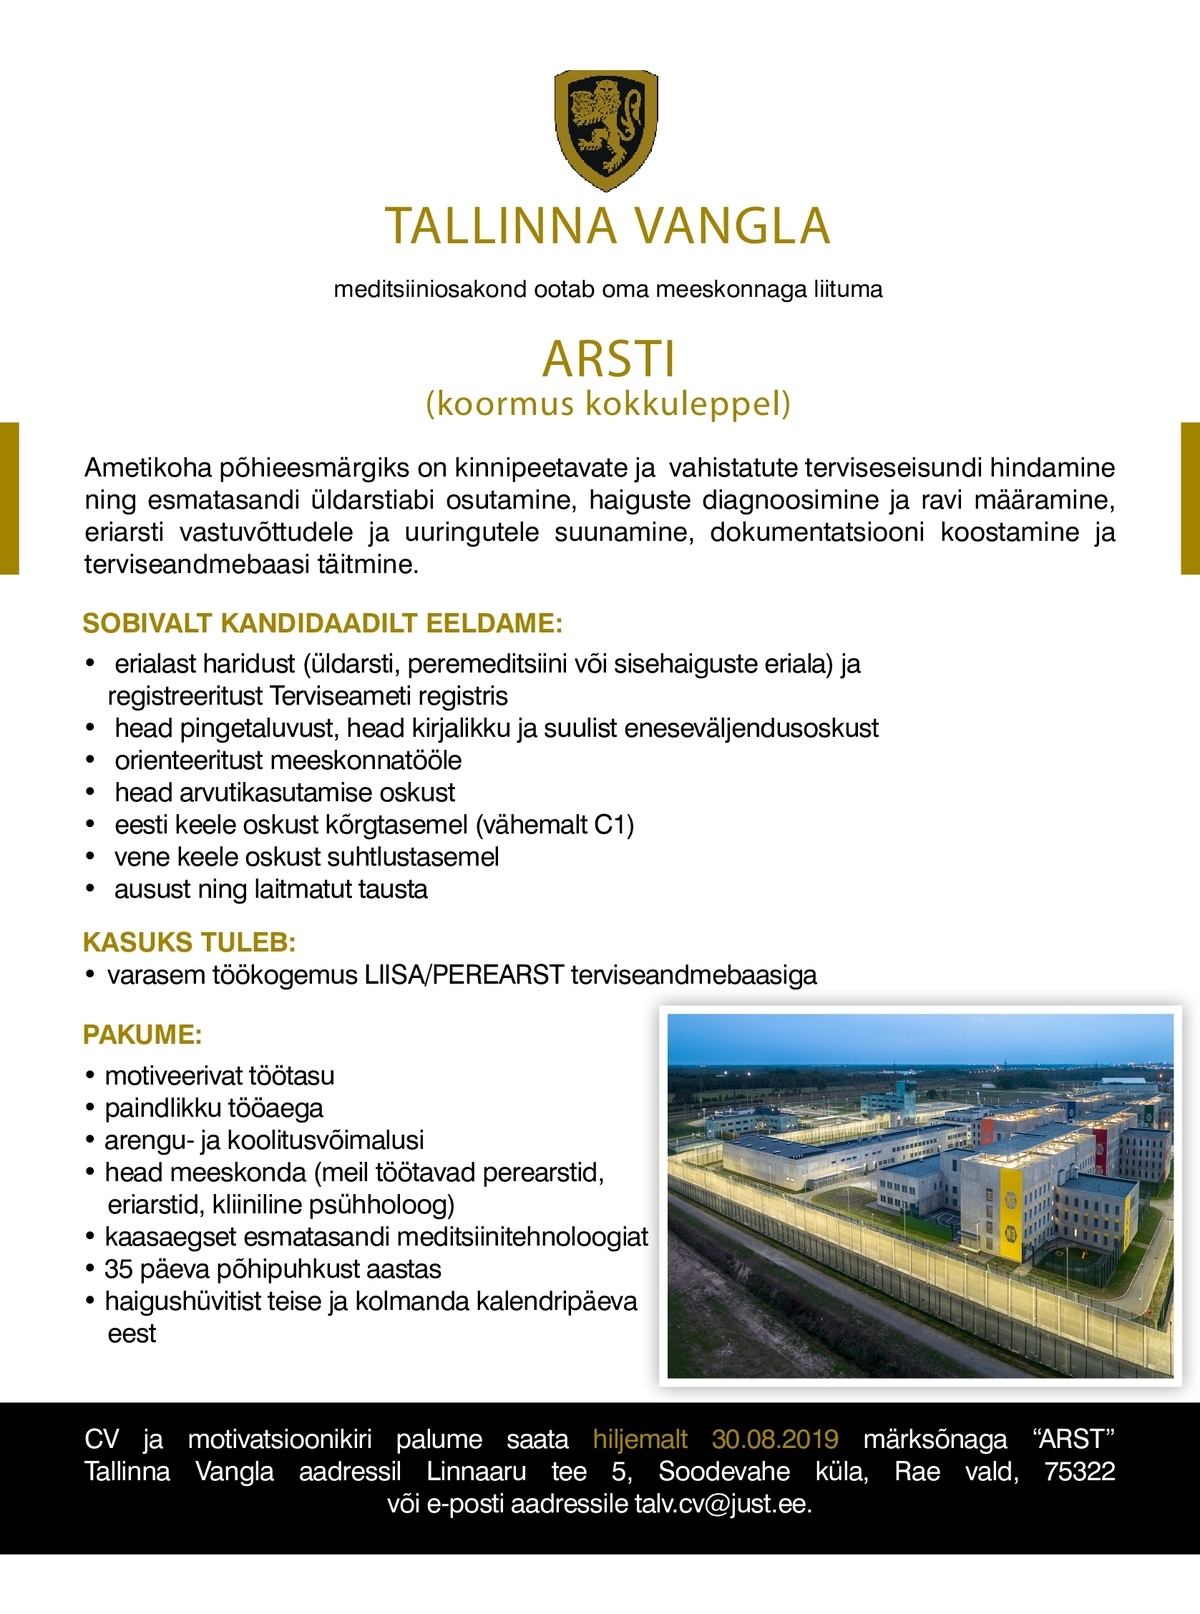 Tallinna Vangla ARST